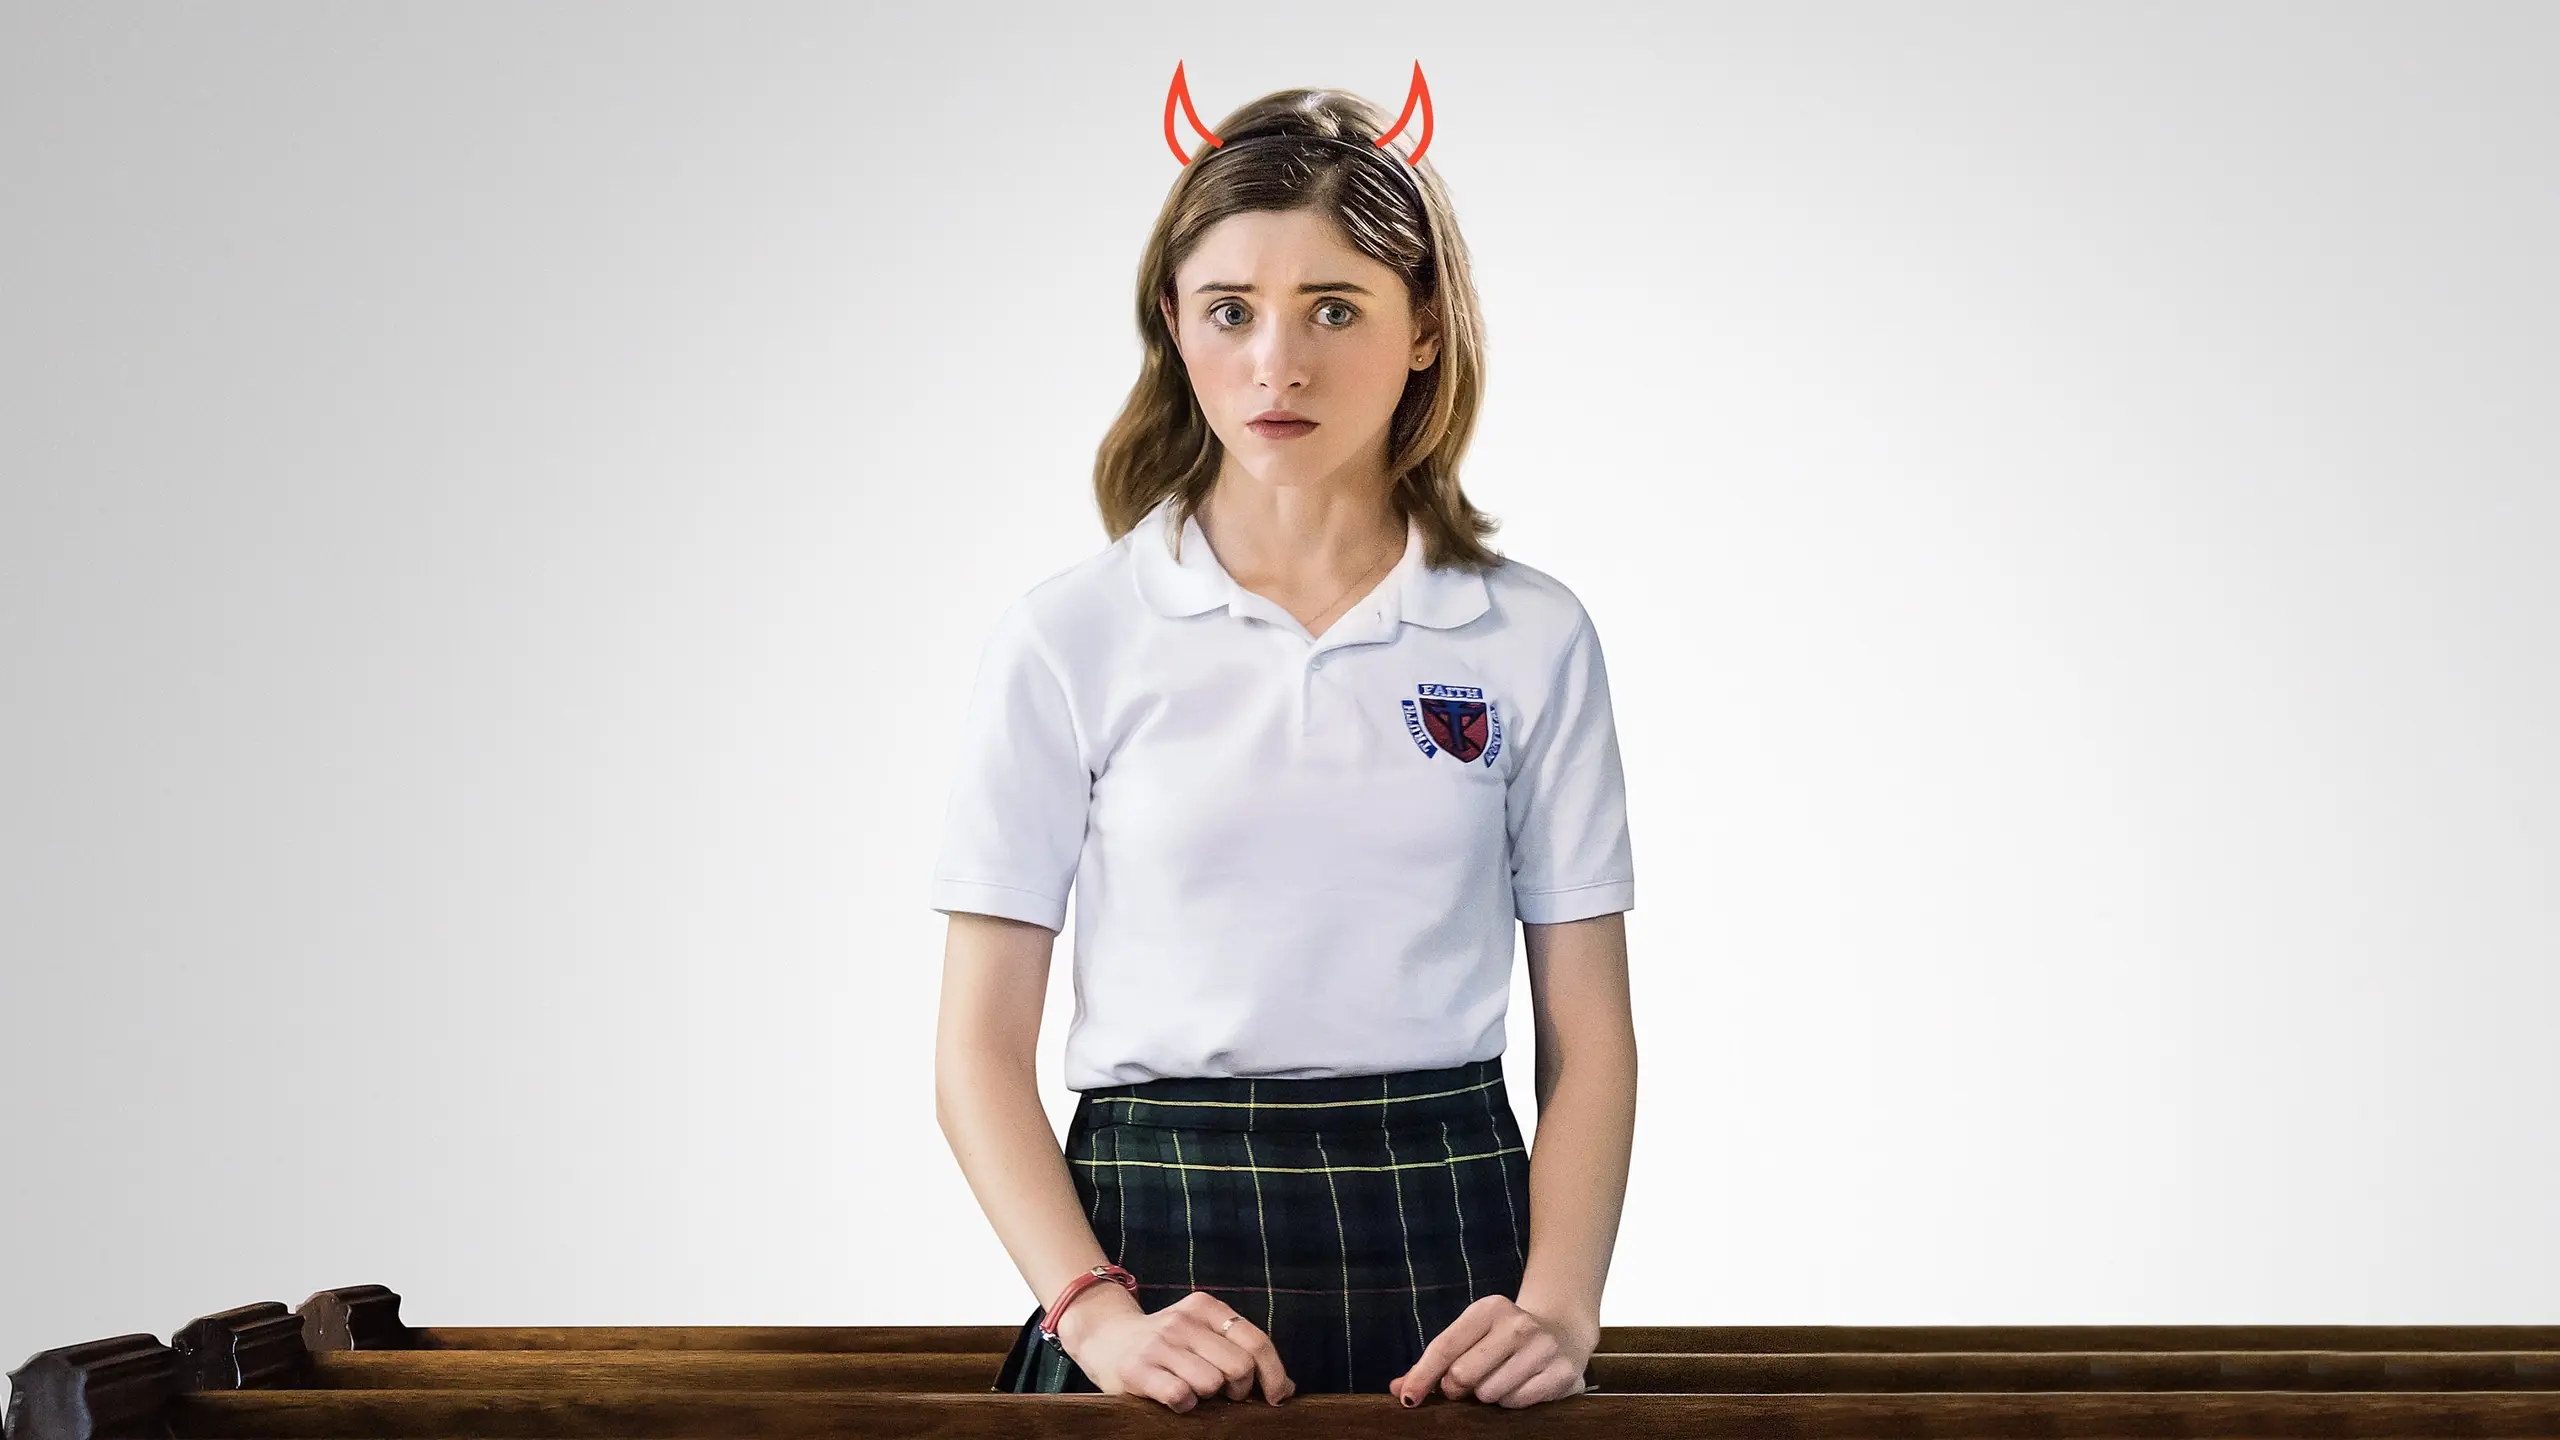 Yes, God, Yes - Böse Mädchen beichten nicht